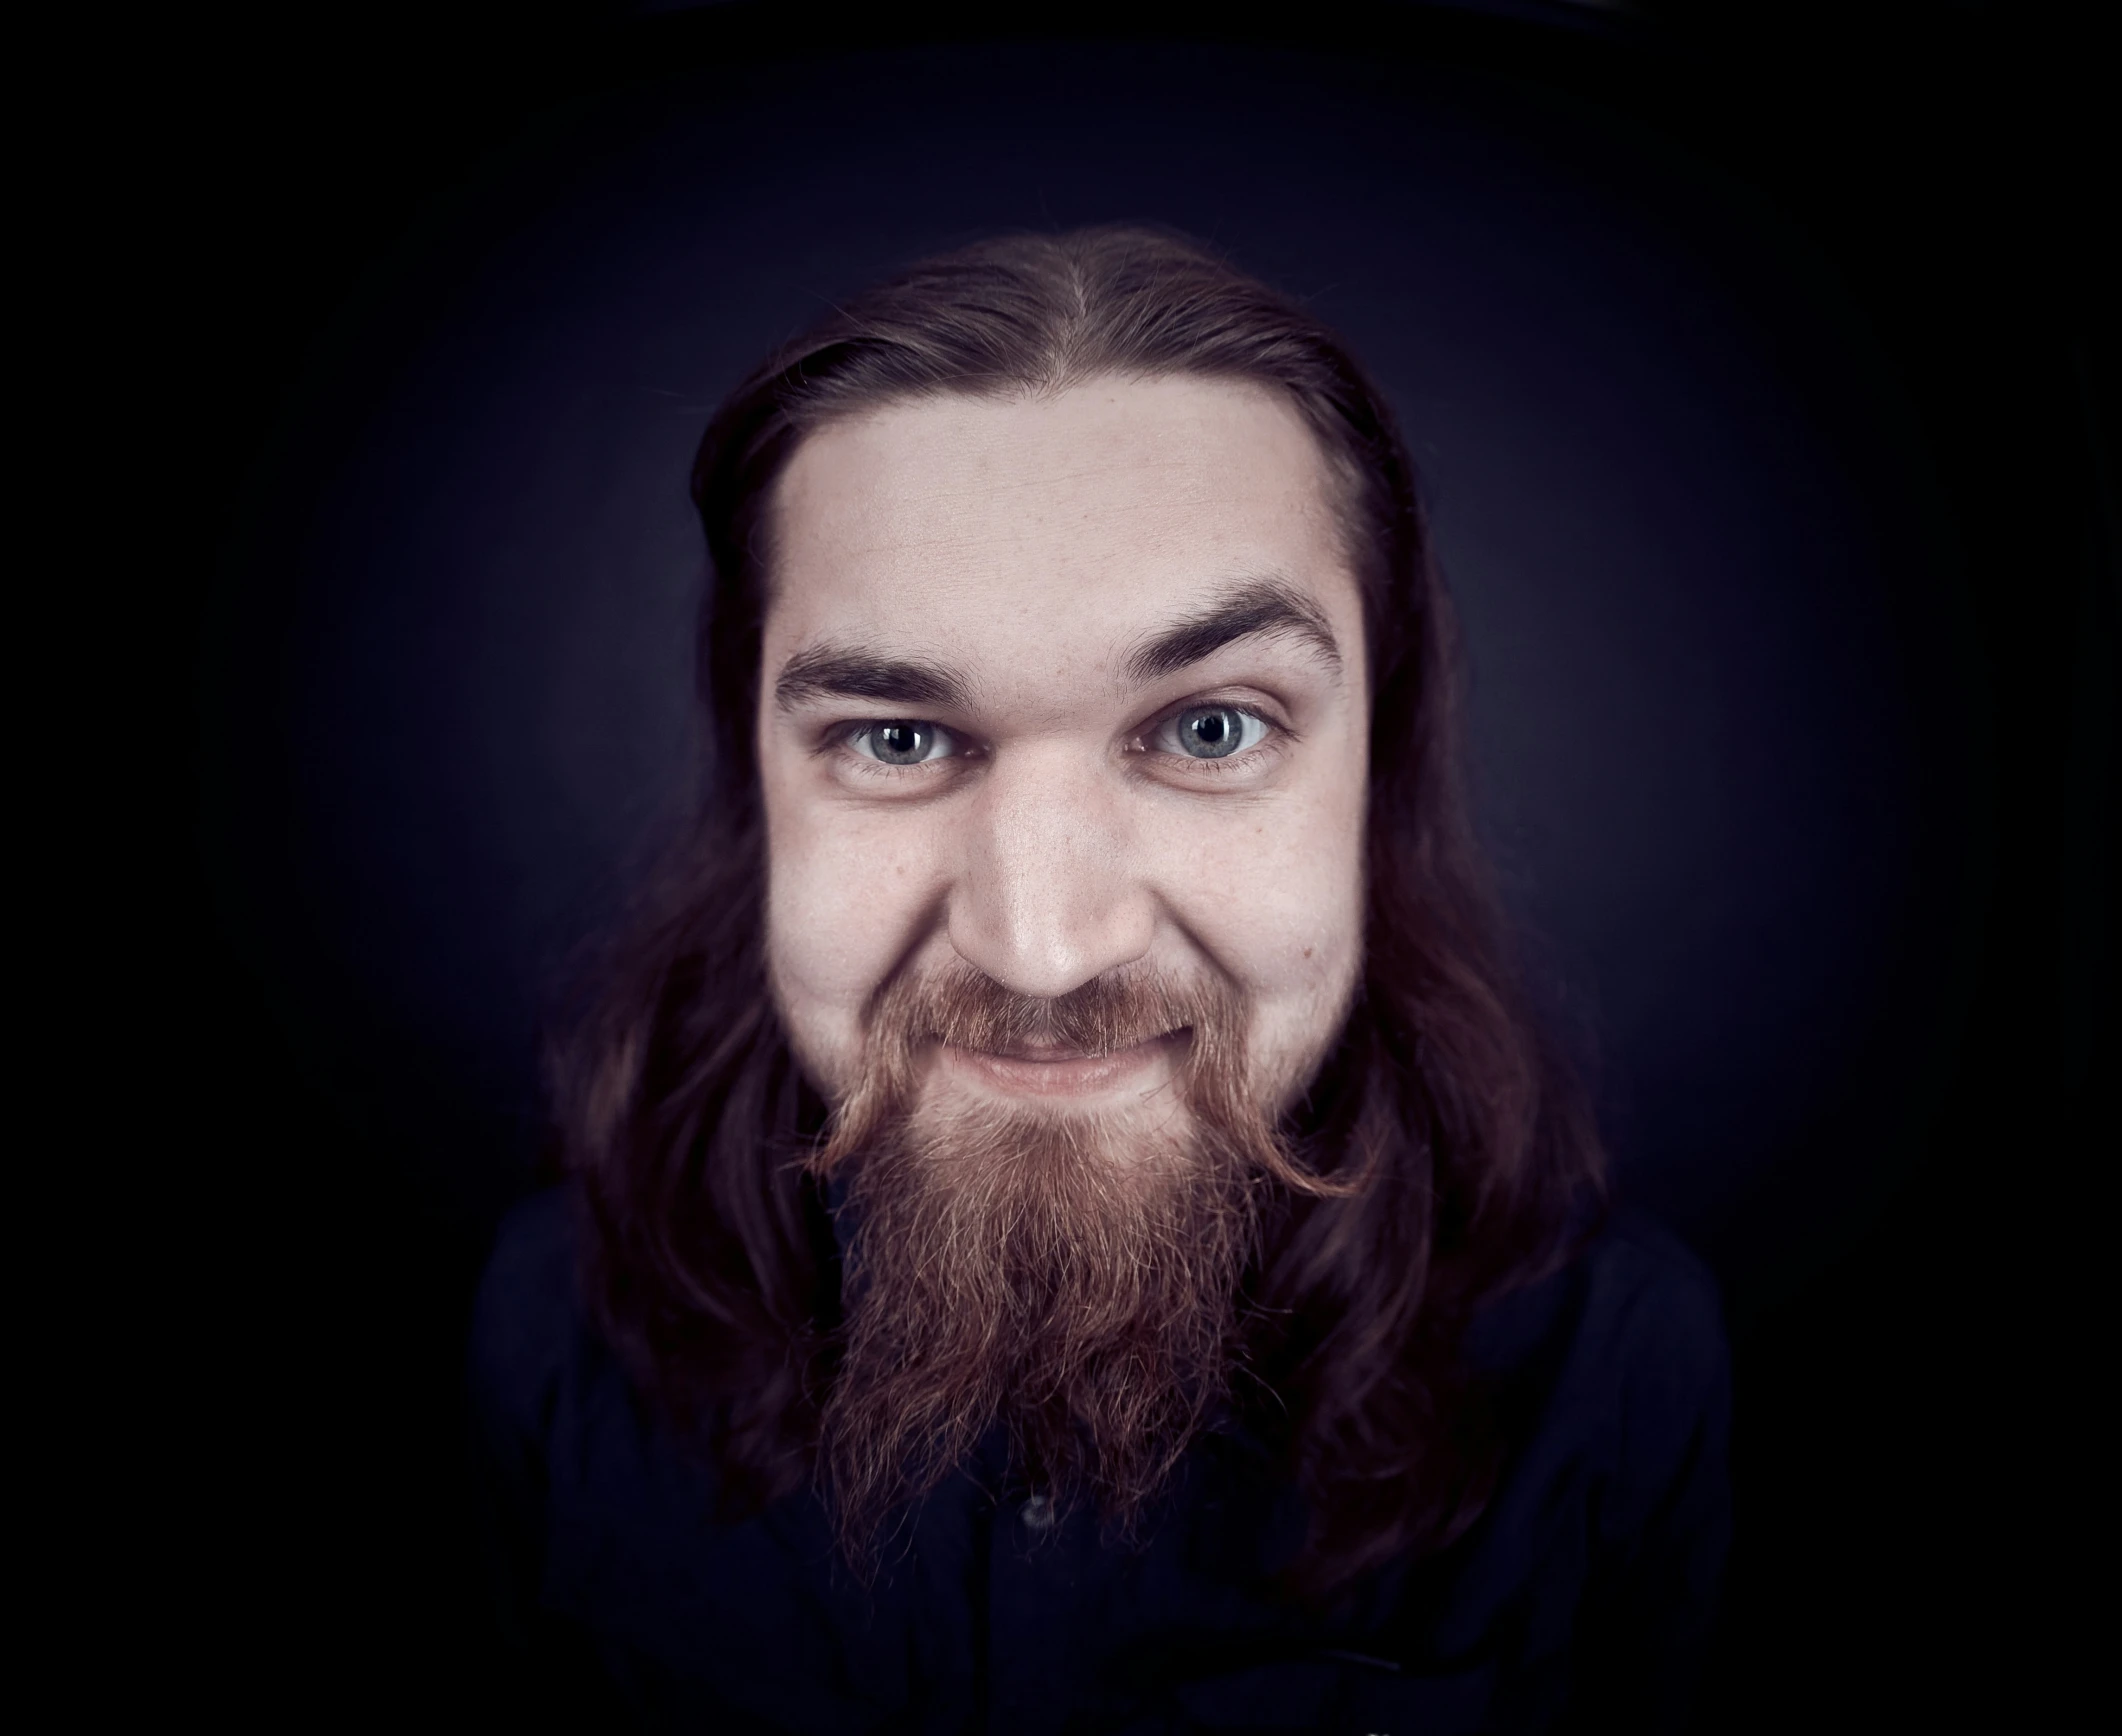 man with long hair and beard smiling at camera